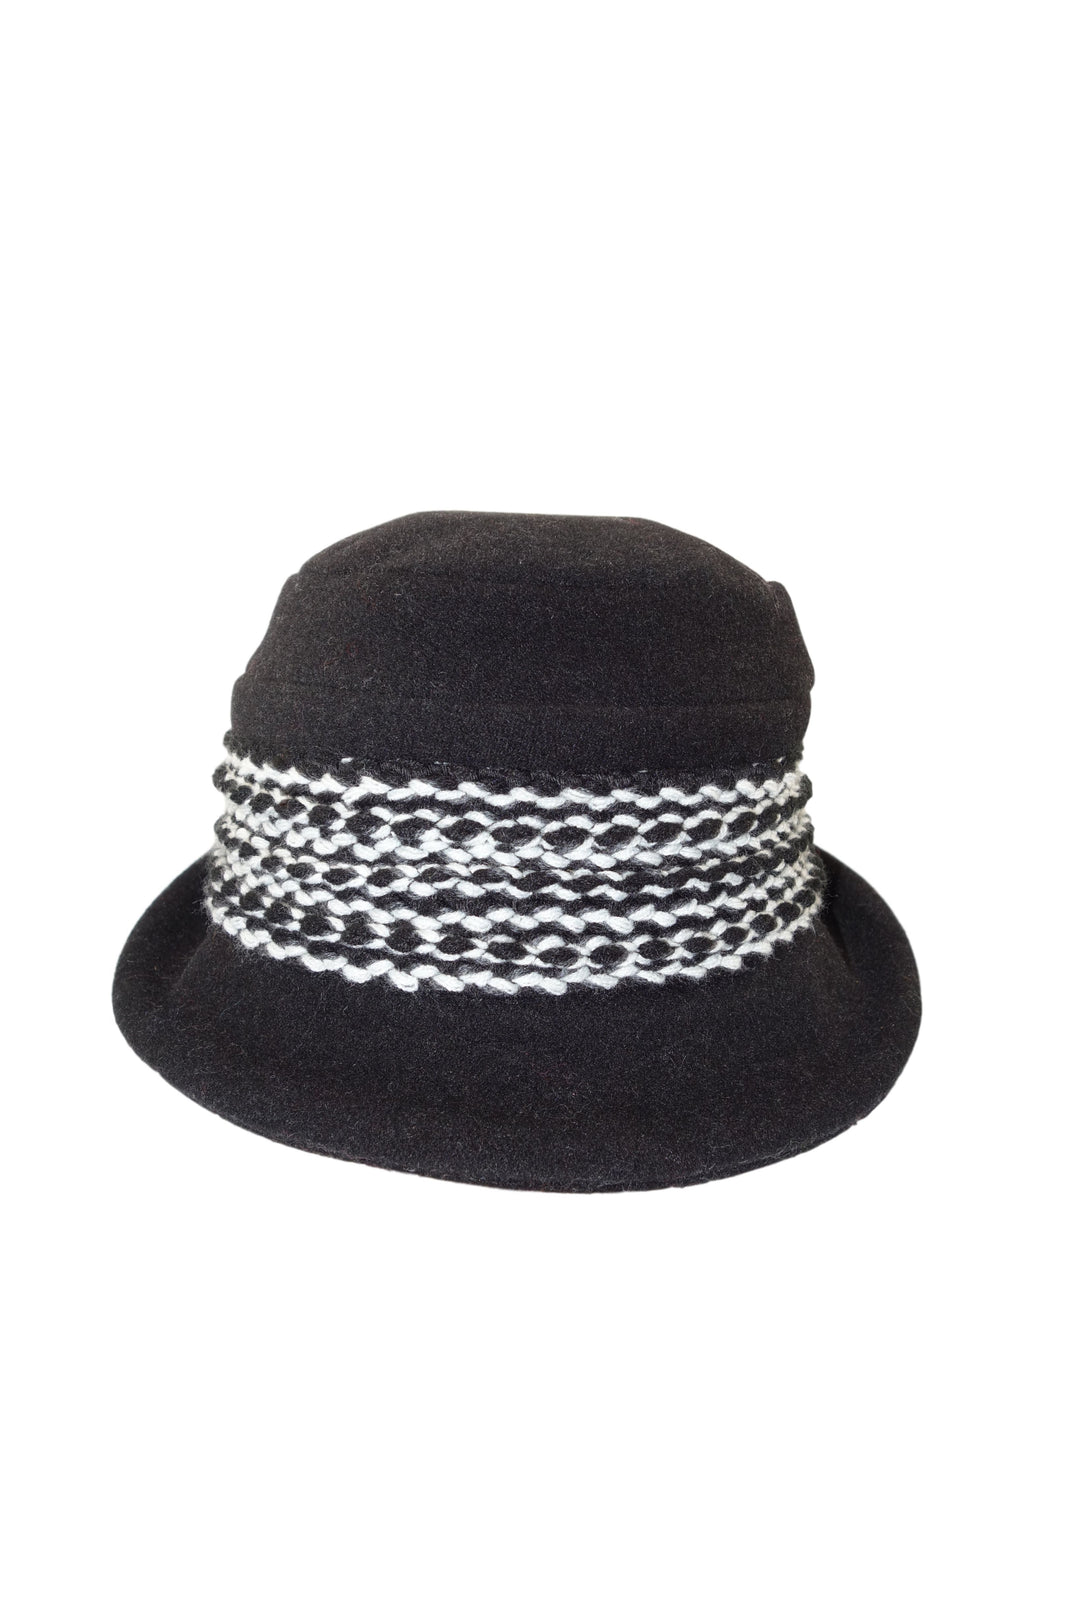 Mayser Hut mit Strickkombi schwarz-Mayser-hutwelt